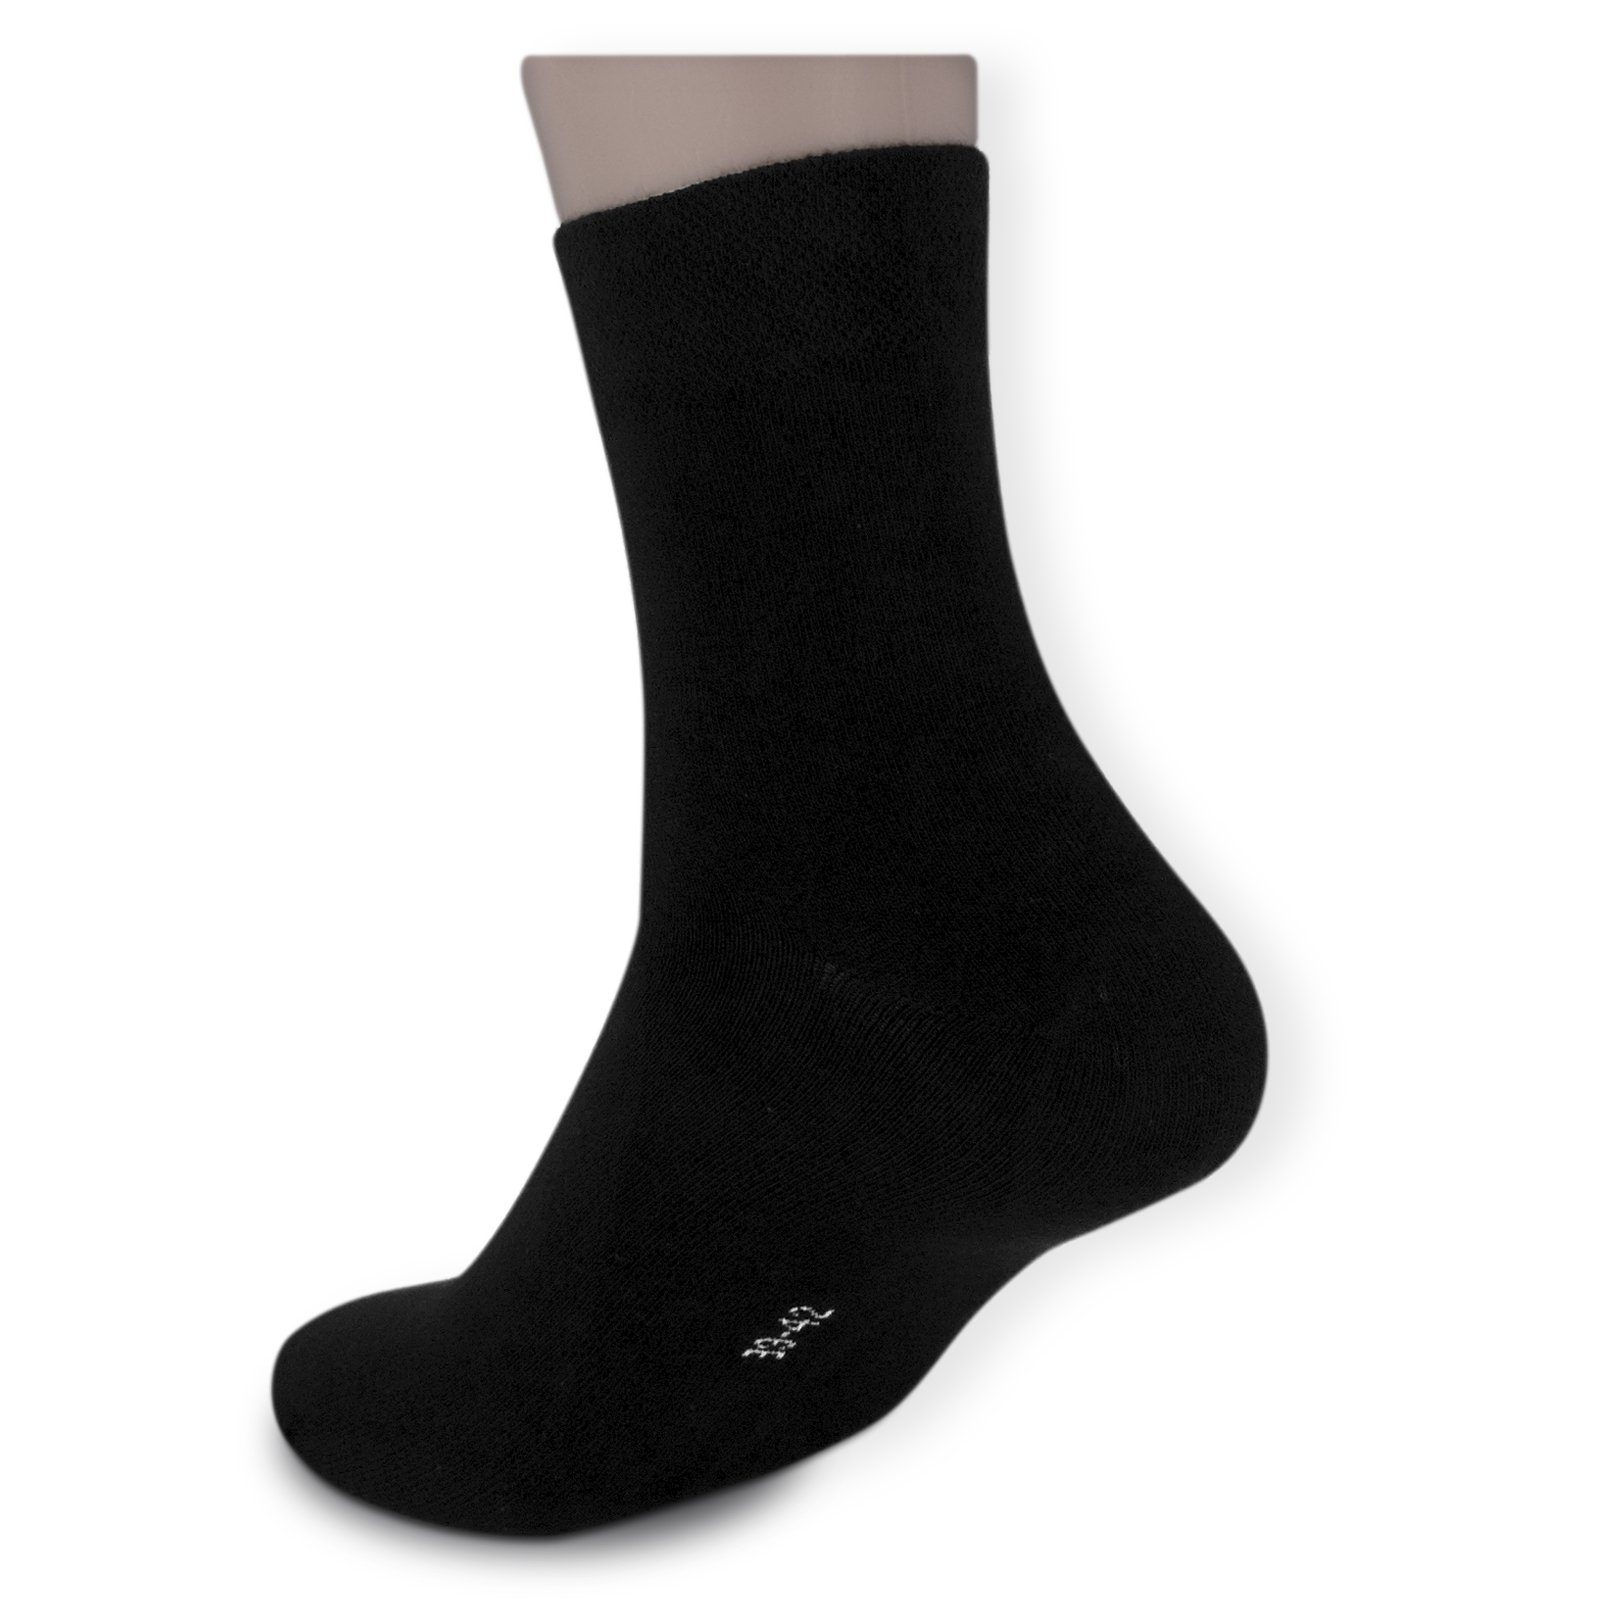 Die Sockenbude Kurzsocken BLACK (Bund, schwarz) ohne mit Komfortbund Business-Socken Gummi 5-Paar